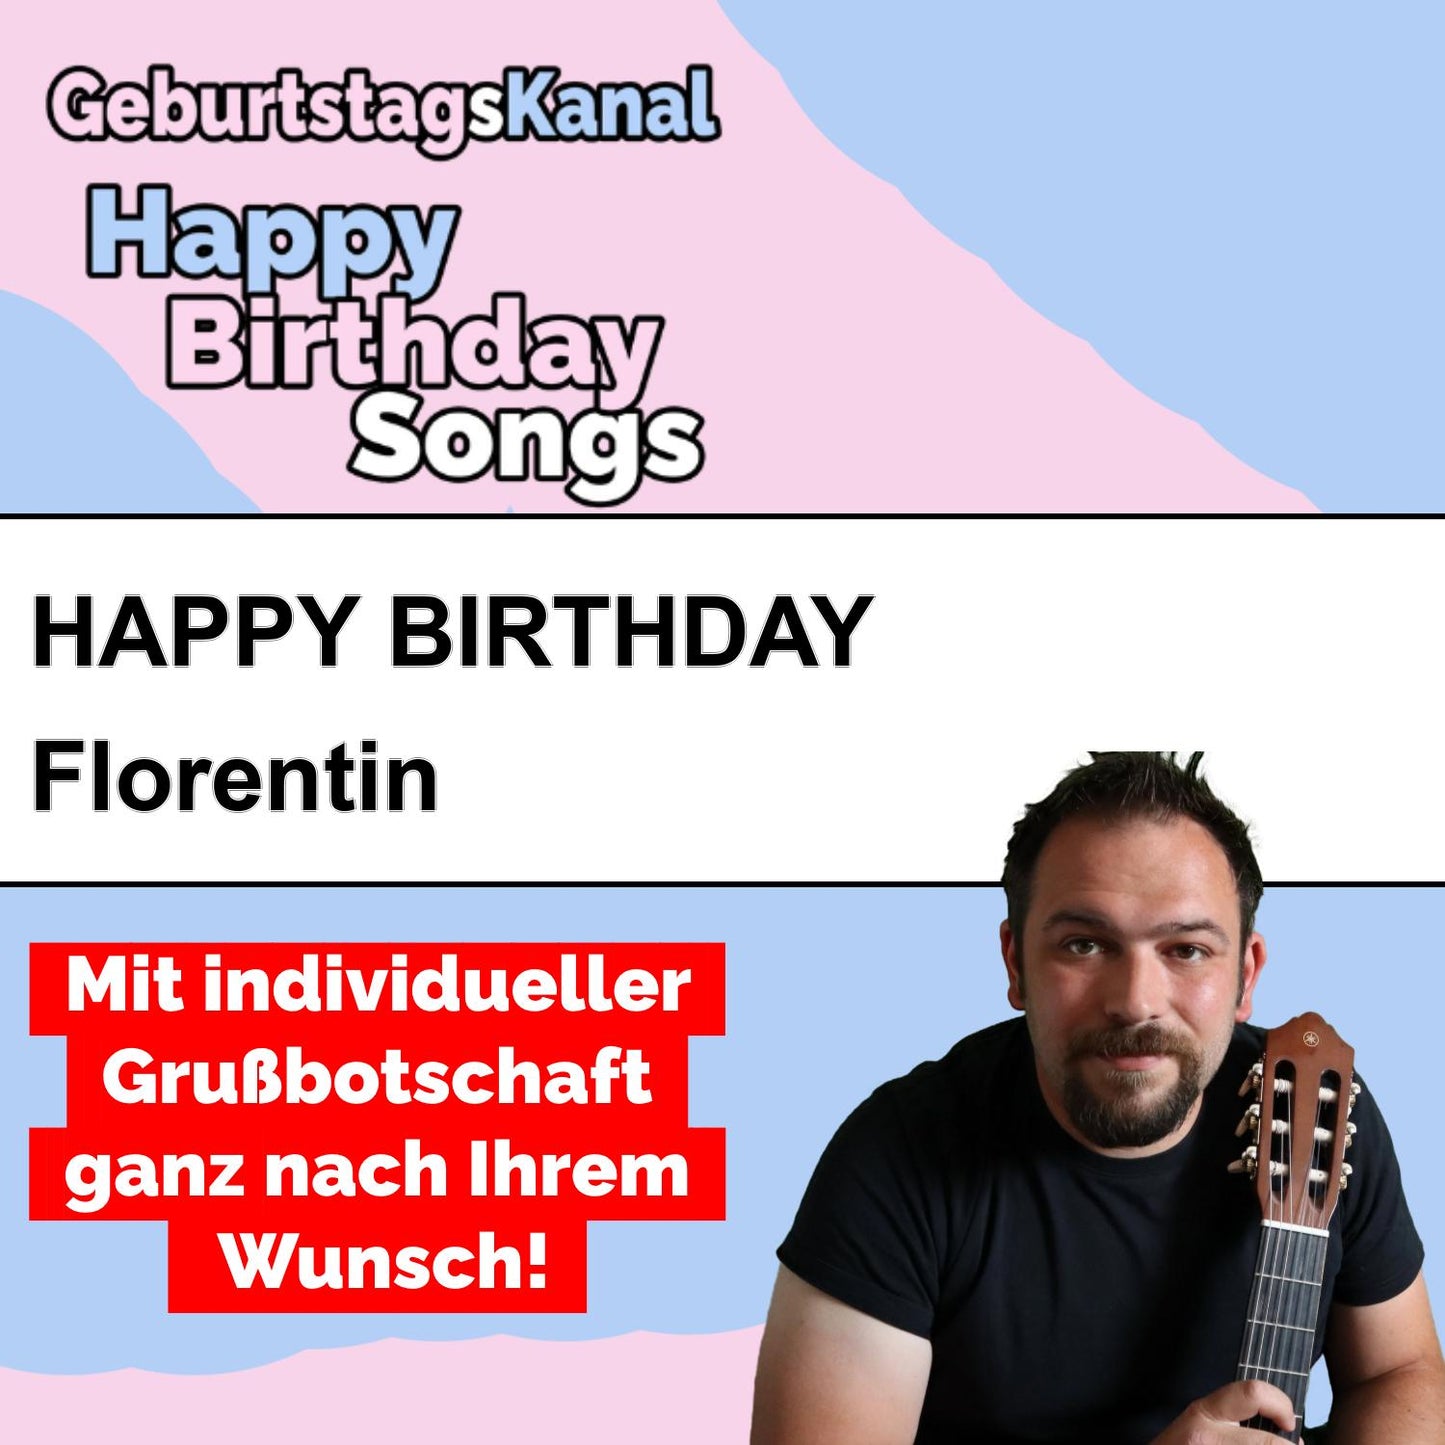 Produktbild Happy Birthday to you Florentin mit Wunschgrußbotschaft